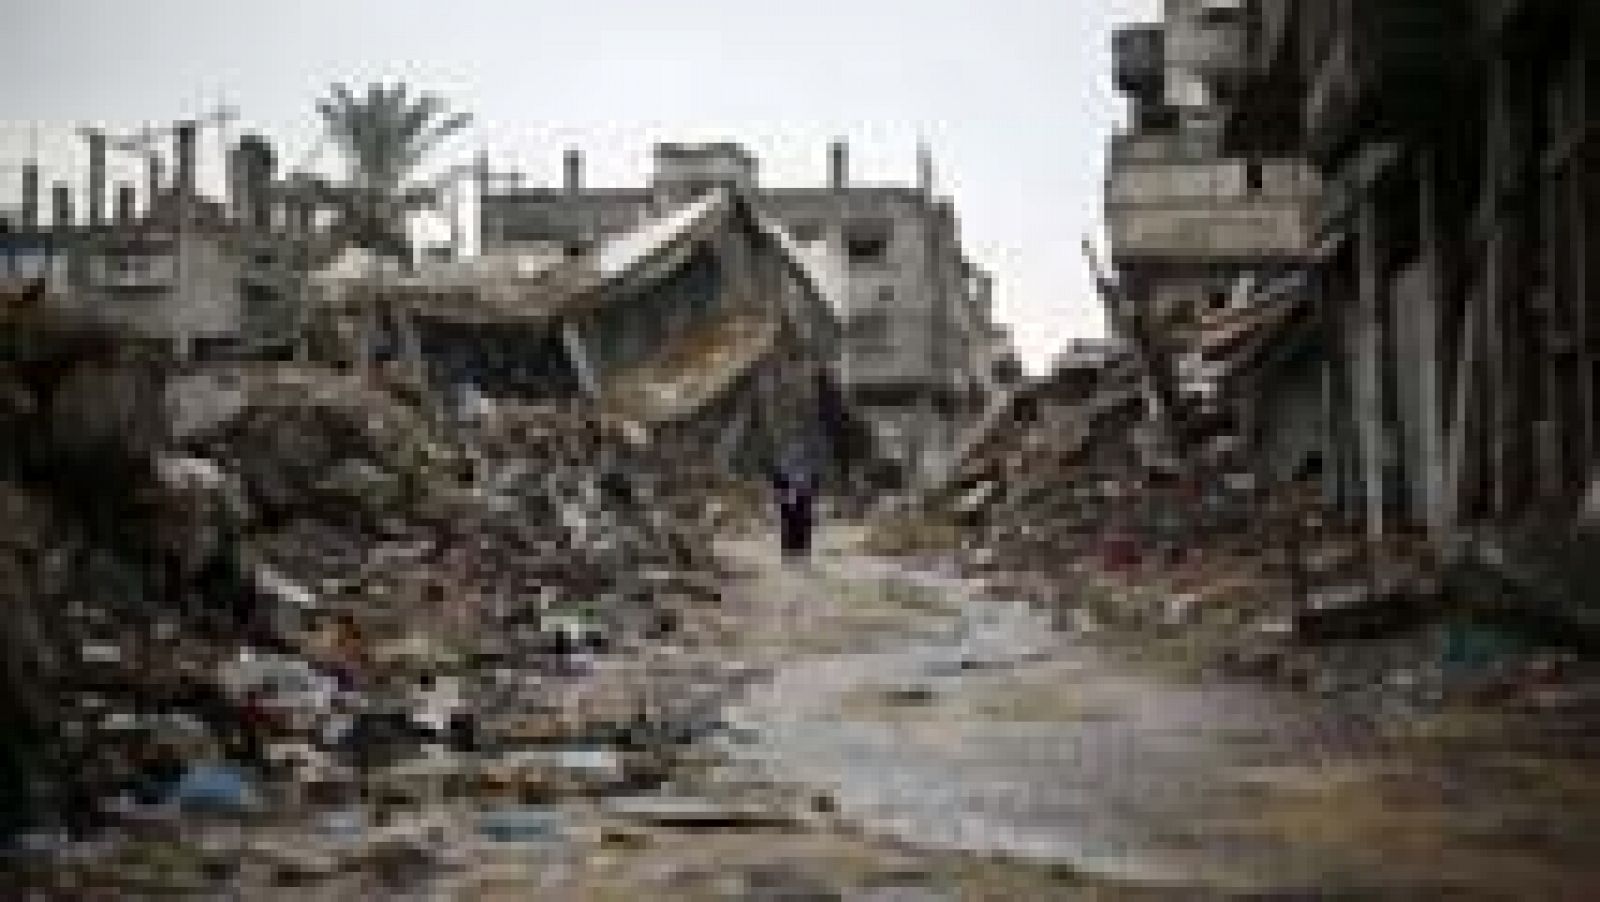  Gaza, la reconstrucción que no llega